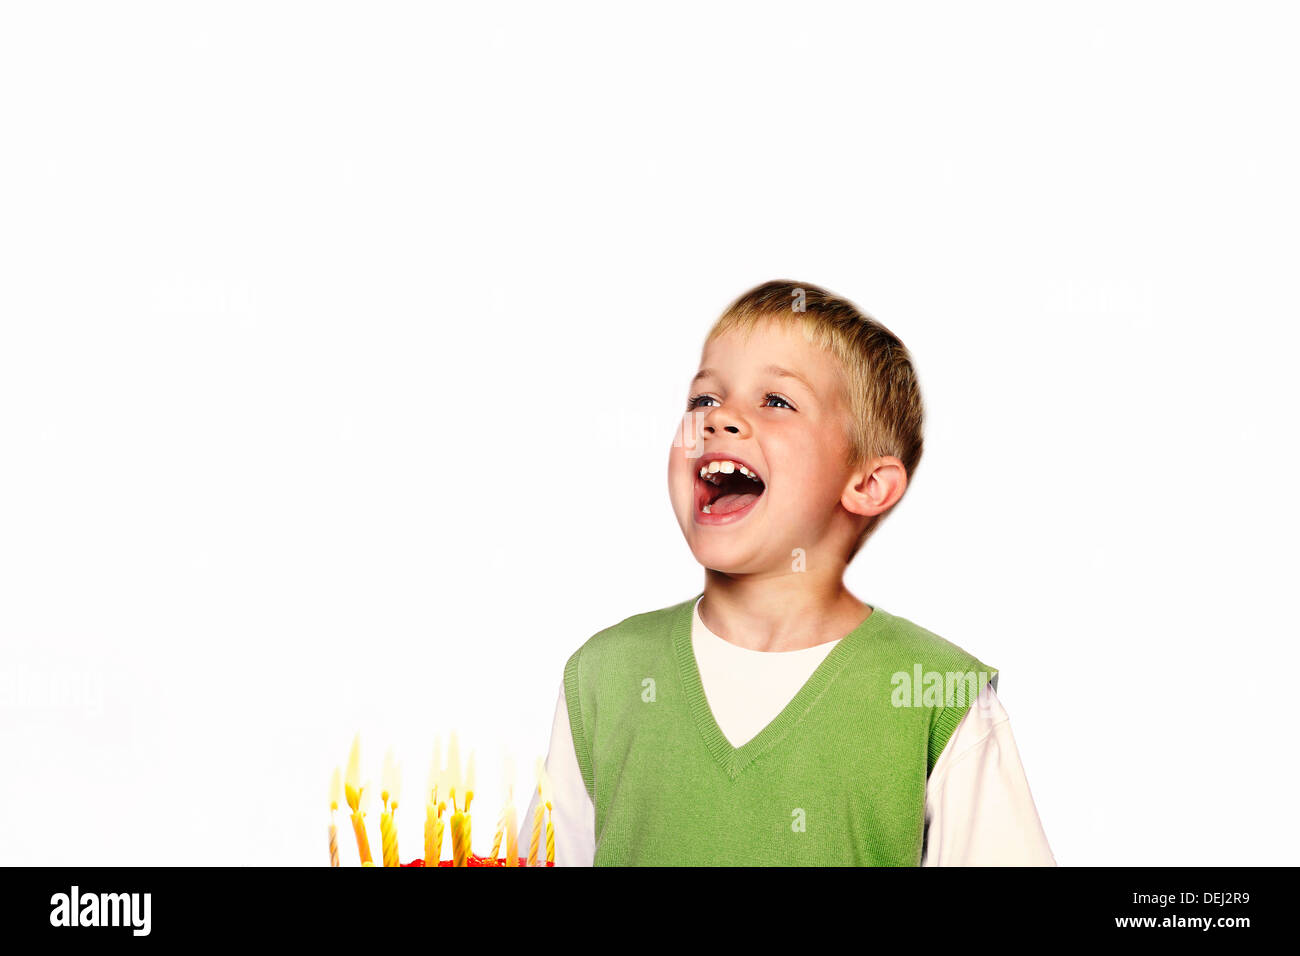 Young Child seine Geburtstagskerzen Ausblasen Stockfoto